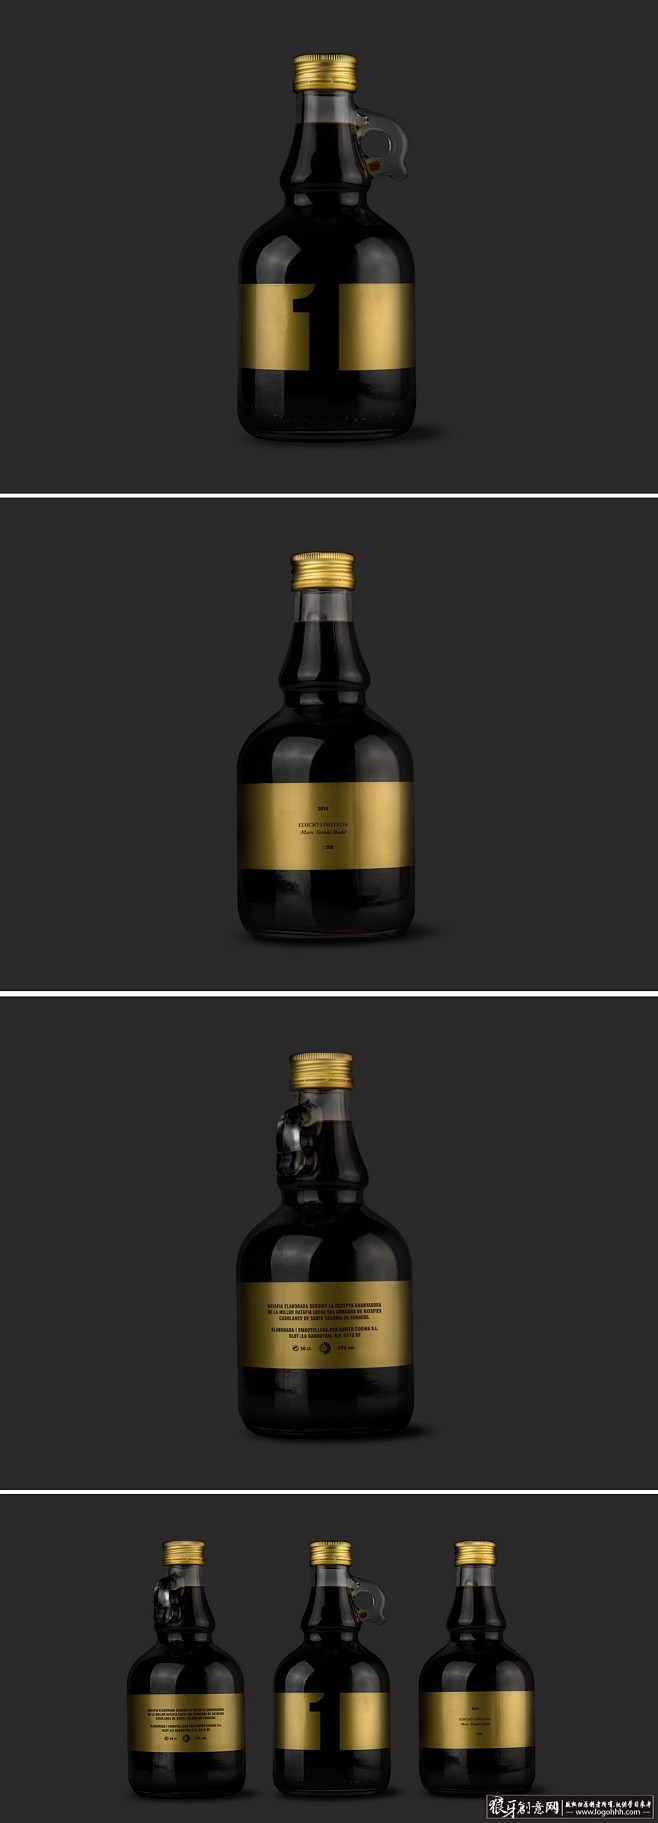 限量版葡萄酒香槟创意玻璃瓶包装设计 创意...